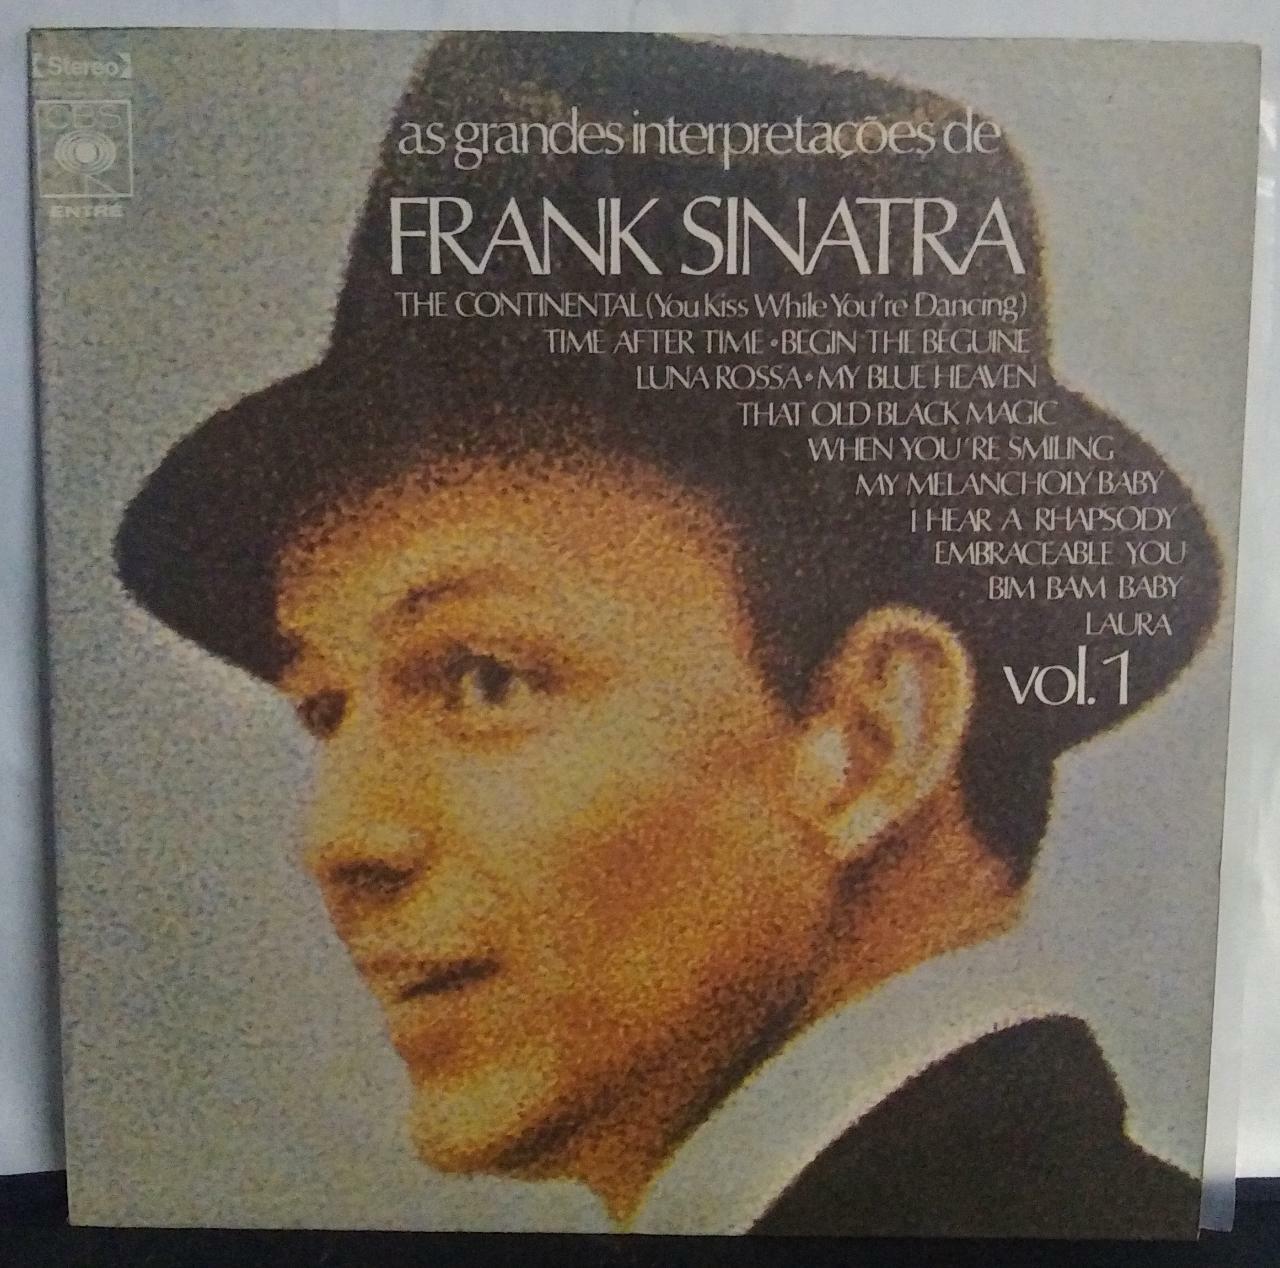 Vinil - Frank Sinatra - As Grandes Interpretações de Vol 1